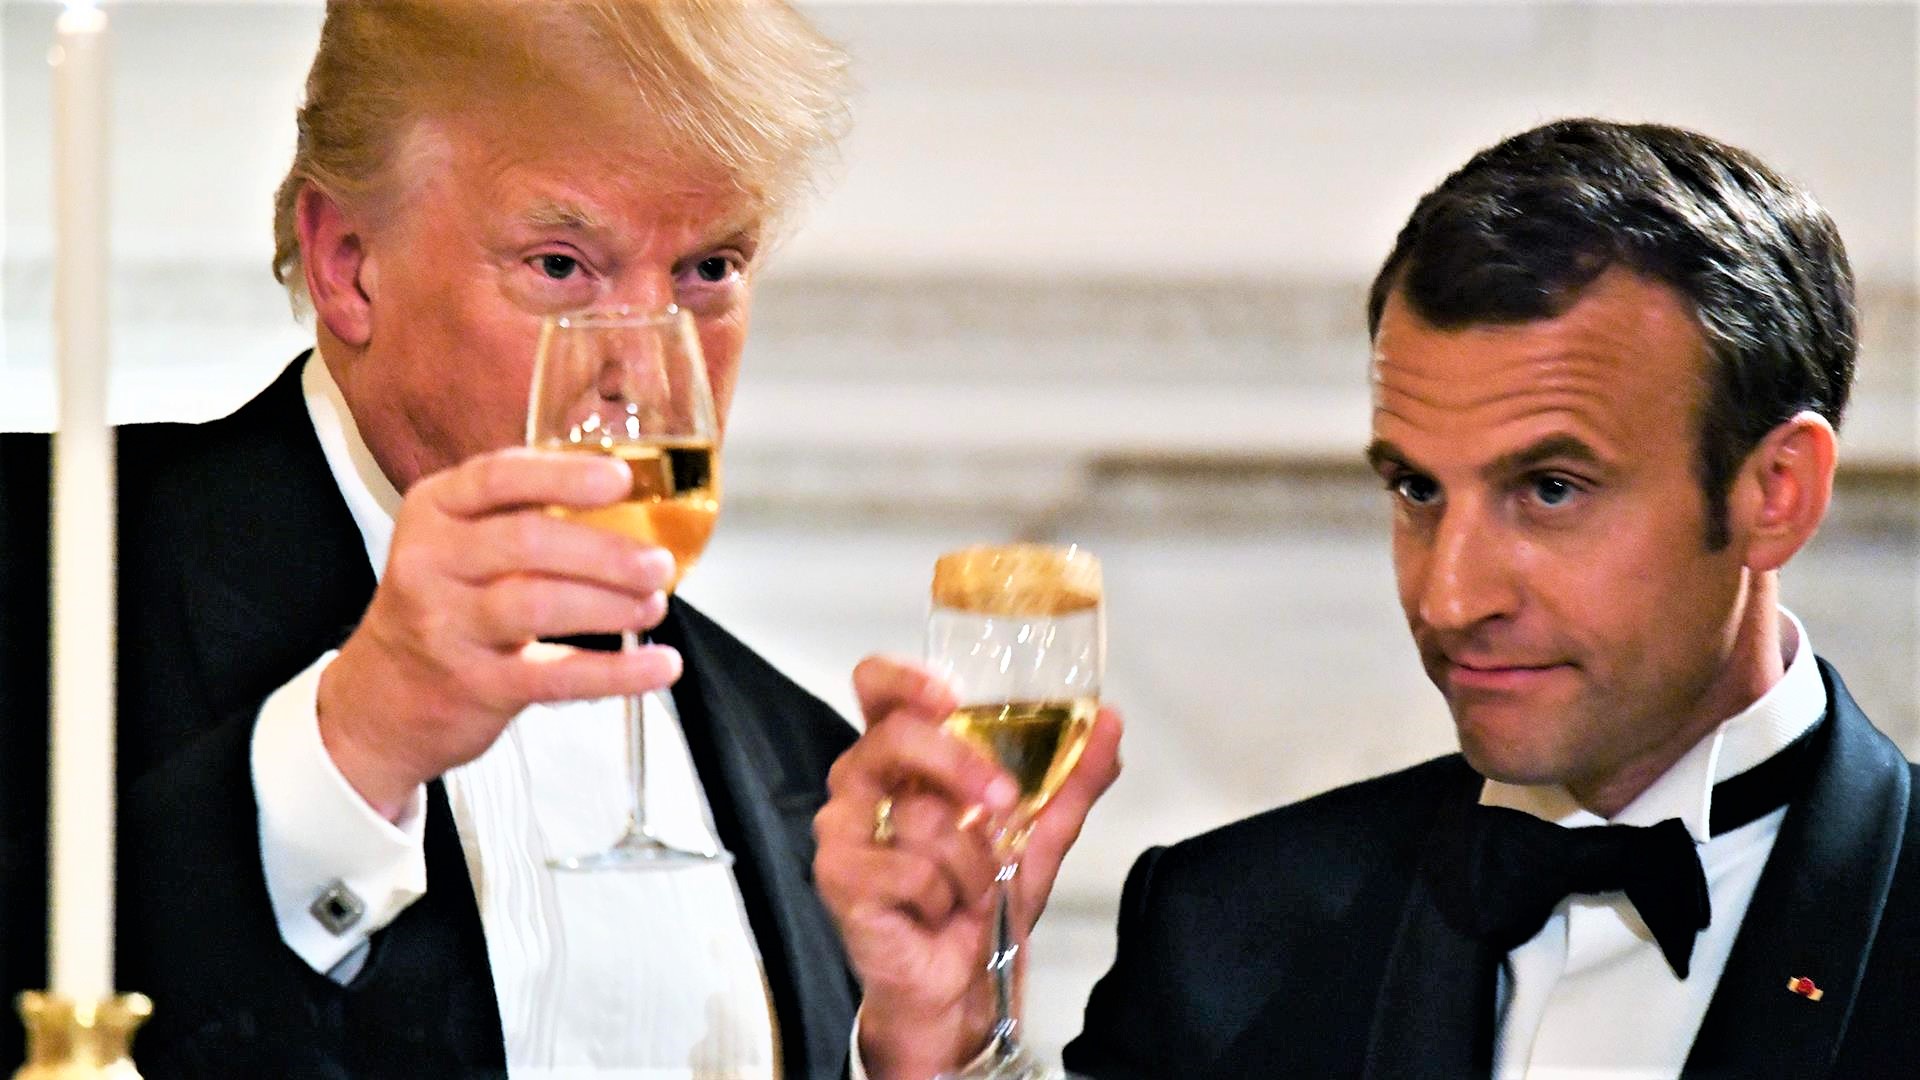 Il presidente americano Donald Trump e quello francese Emmanuel Macron brindano con champagne francese.